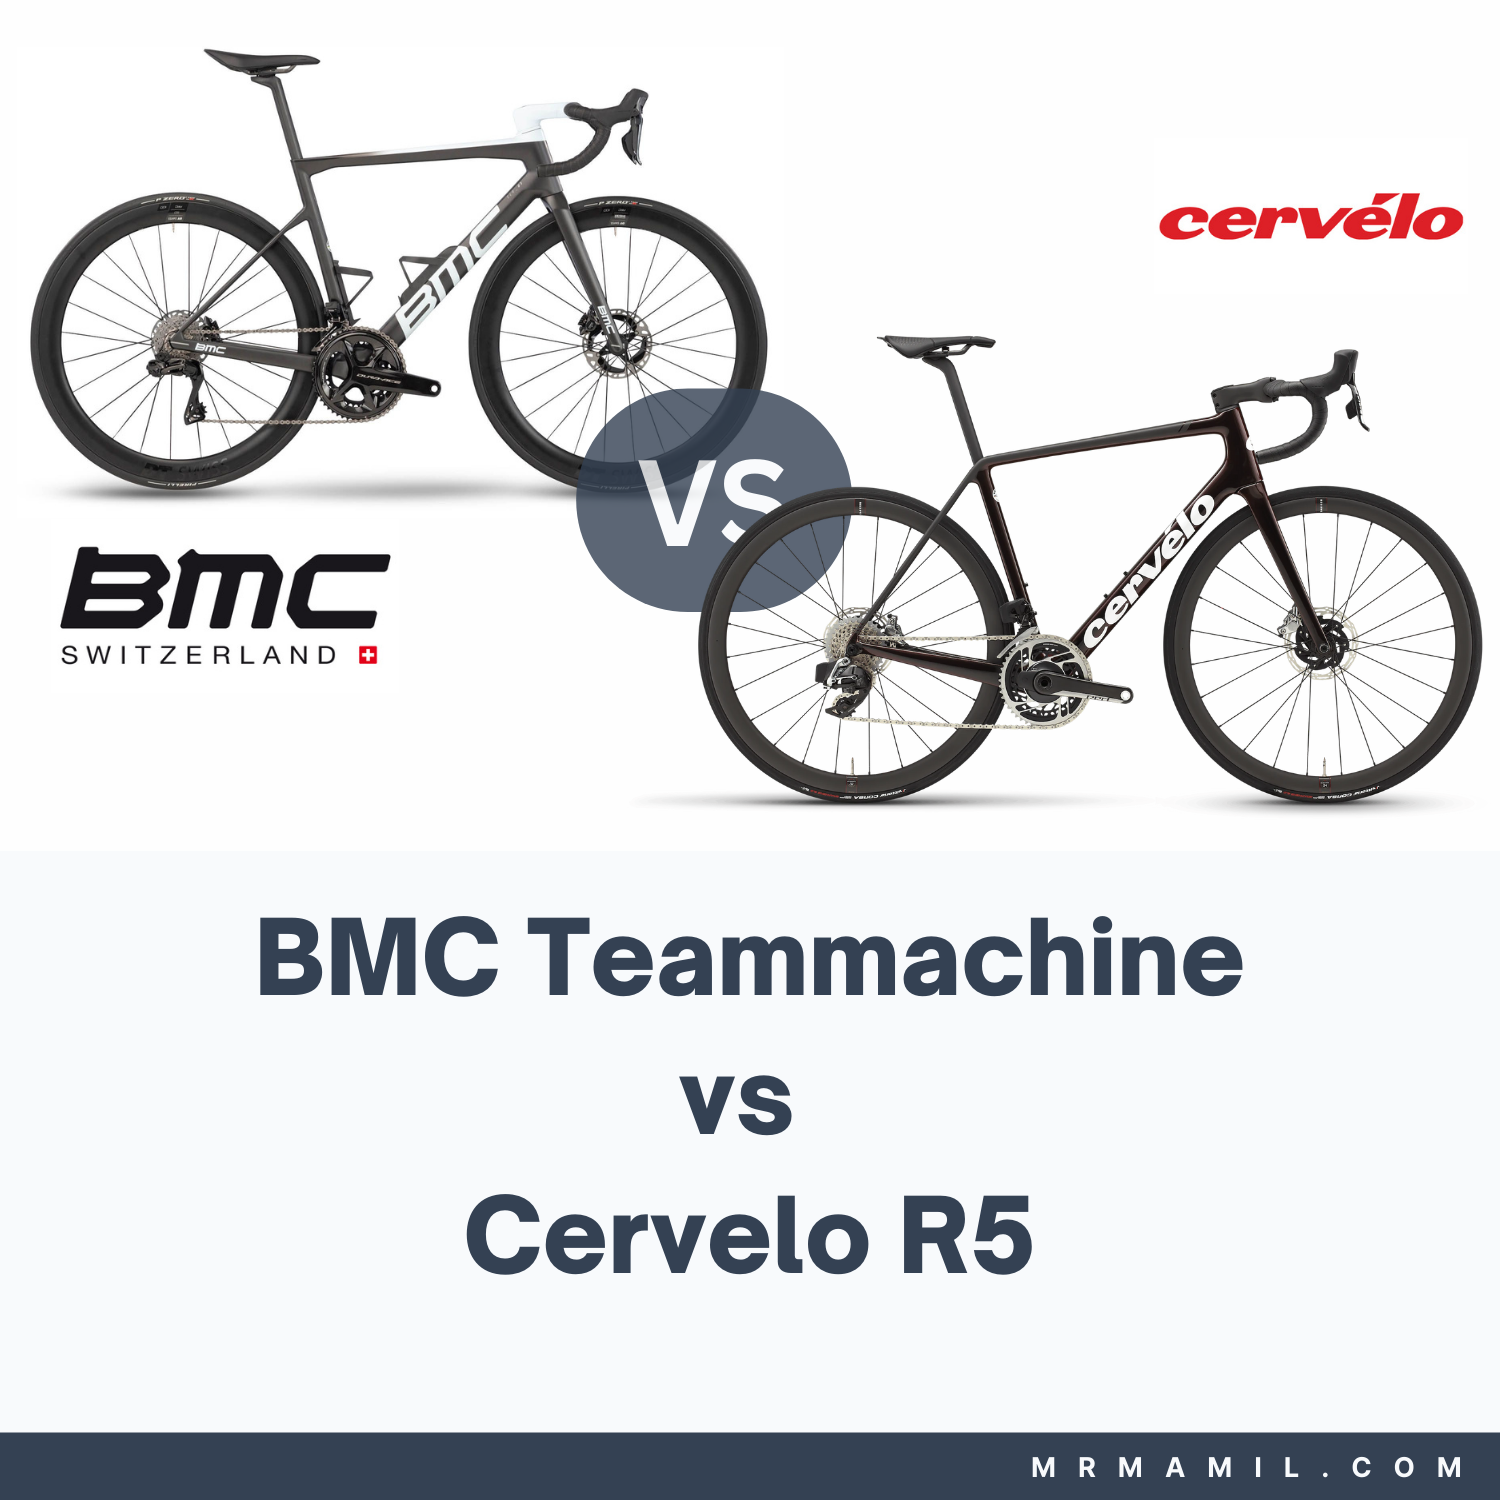 BMC Teammachine vs Cervelo R5